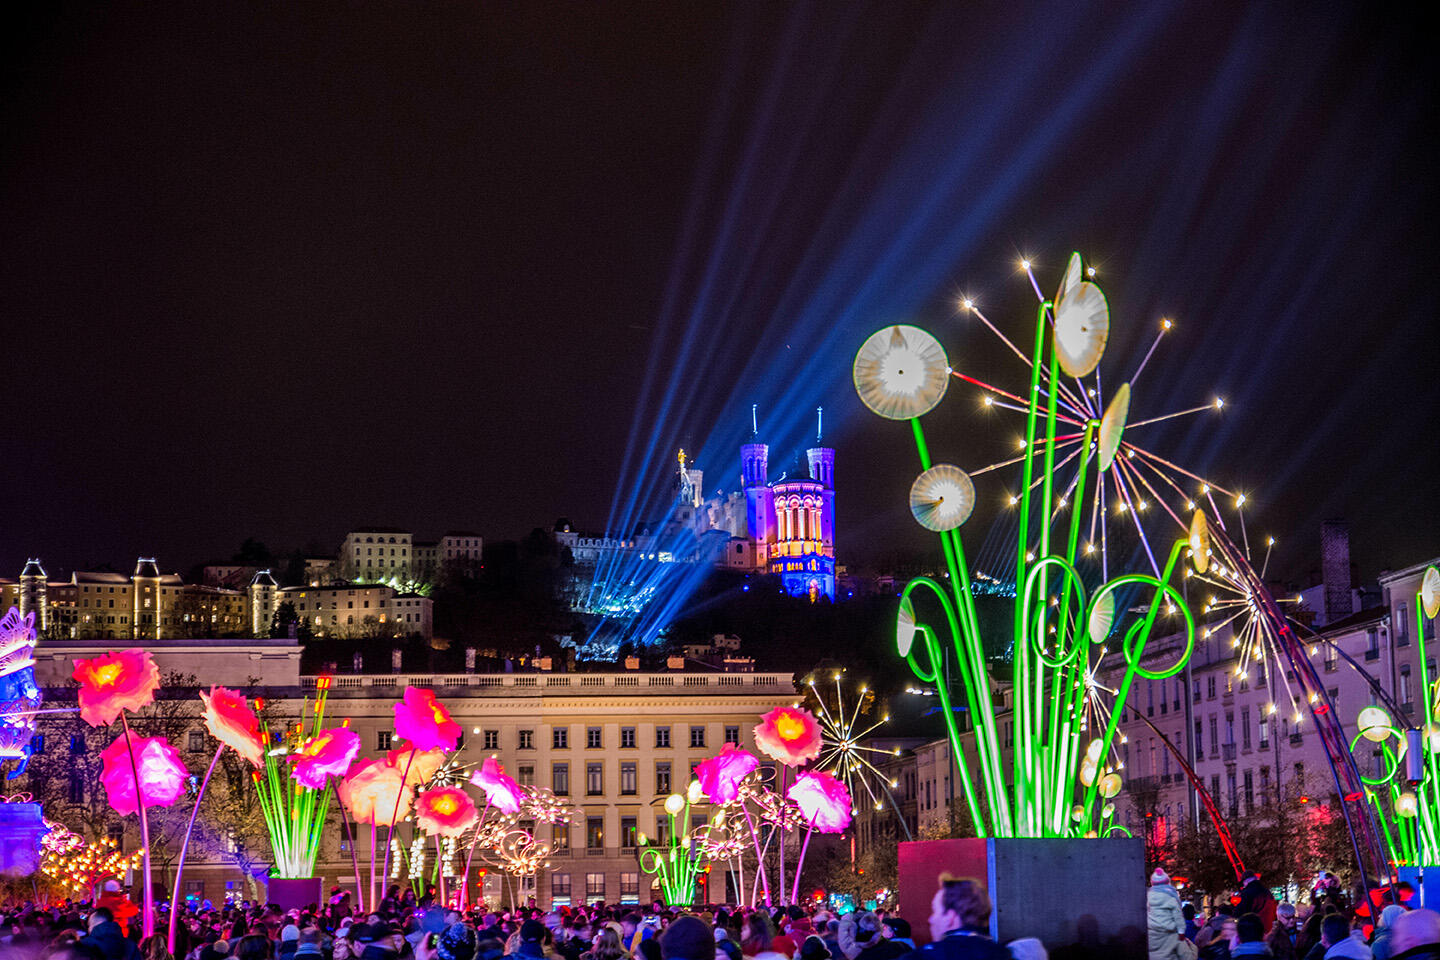 Vue du Festival des Lumières à Lyon, avec la basilique illuminée et installations florales colorées, séjournez à Appart’City.